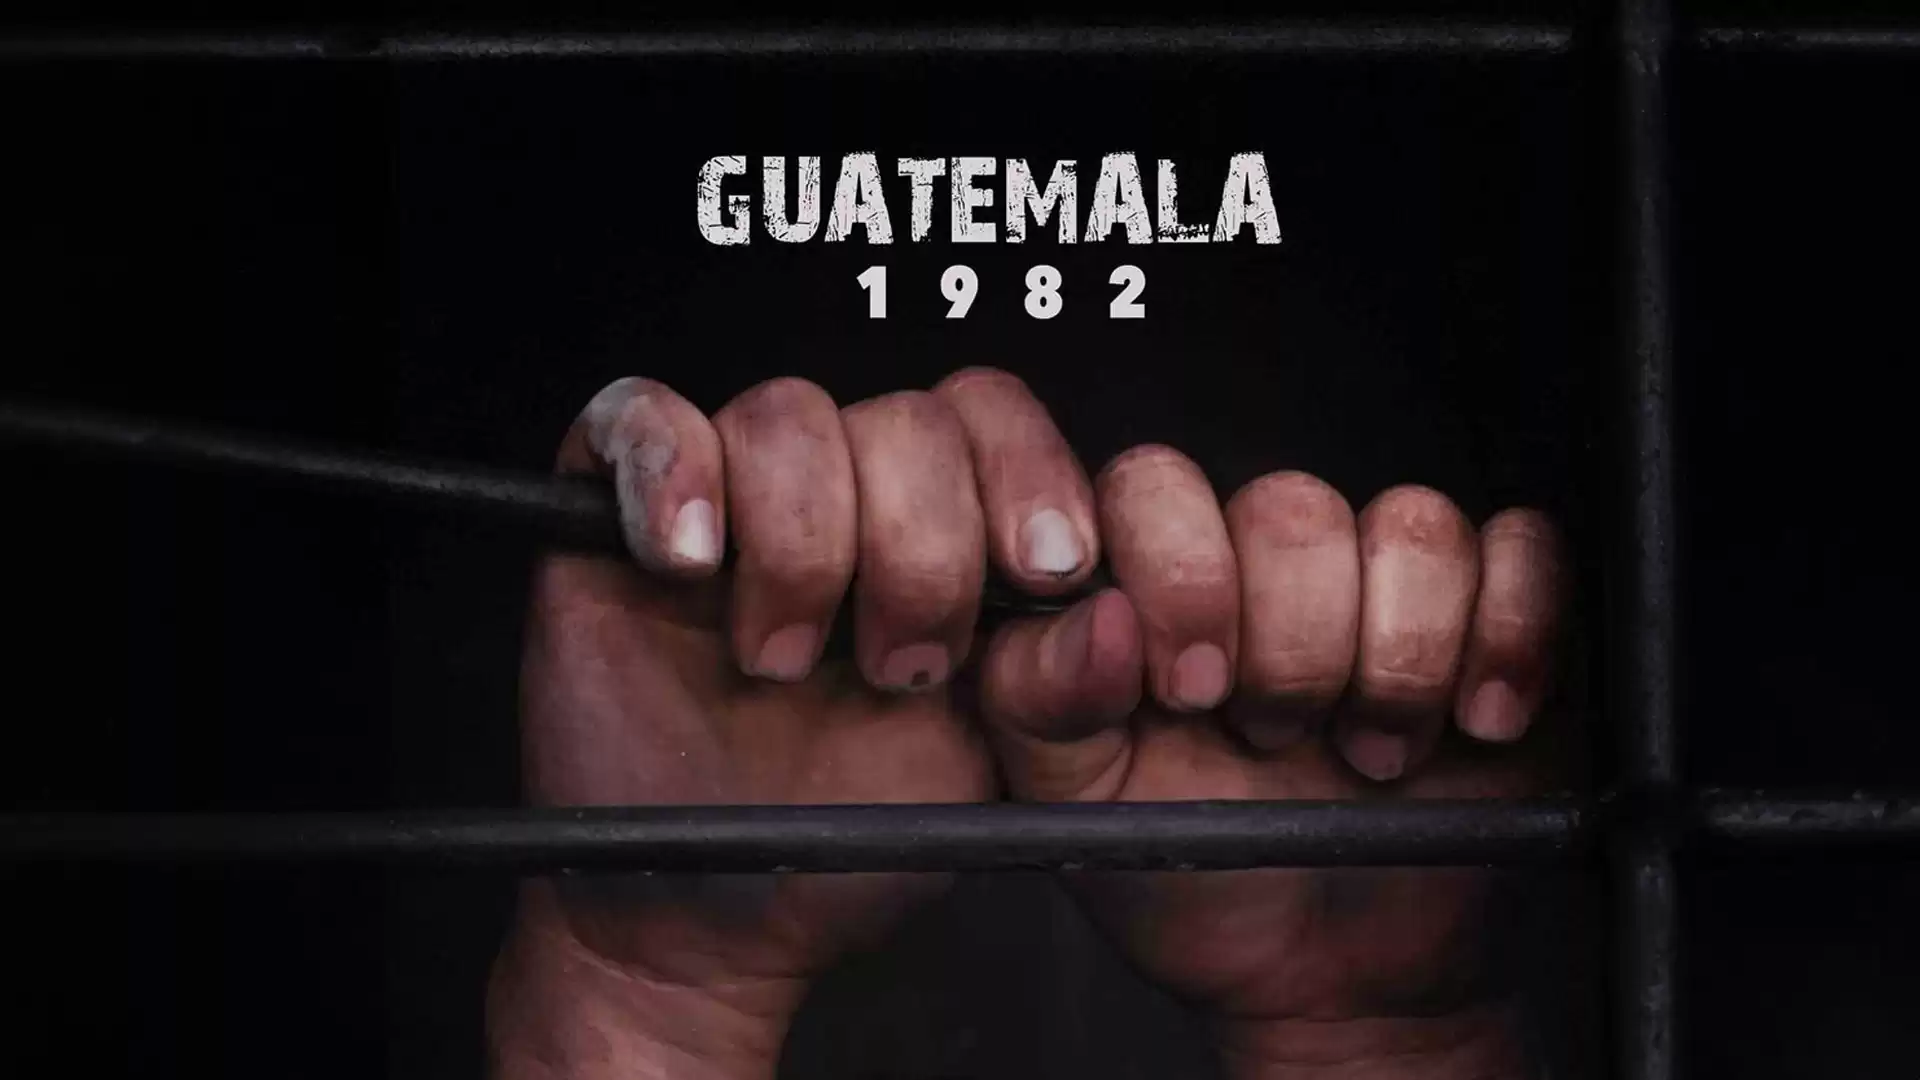 Guatemala 1982